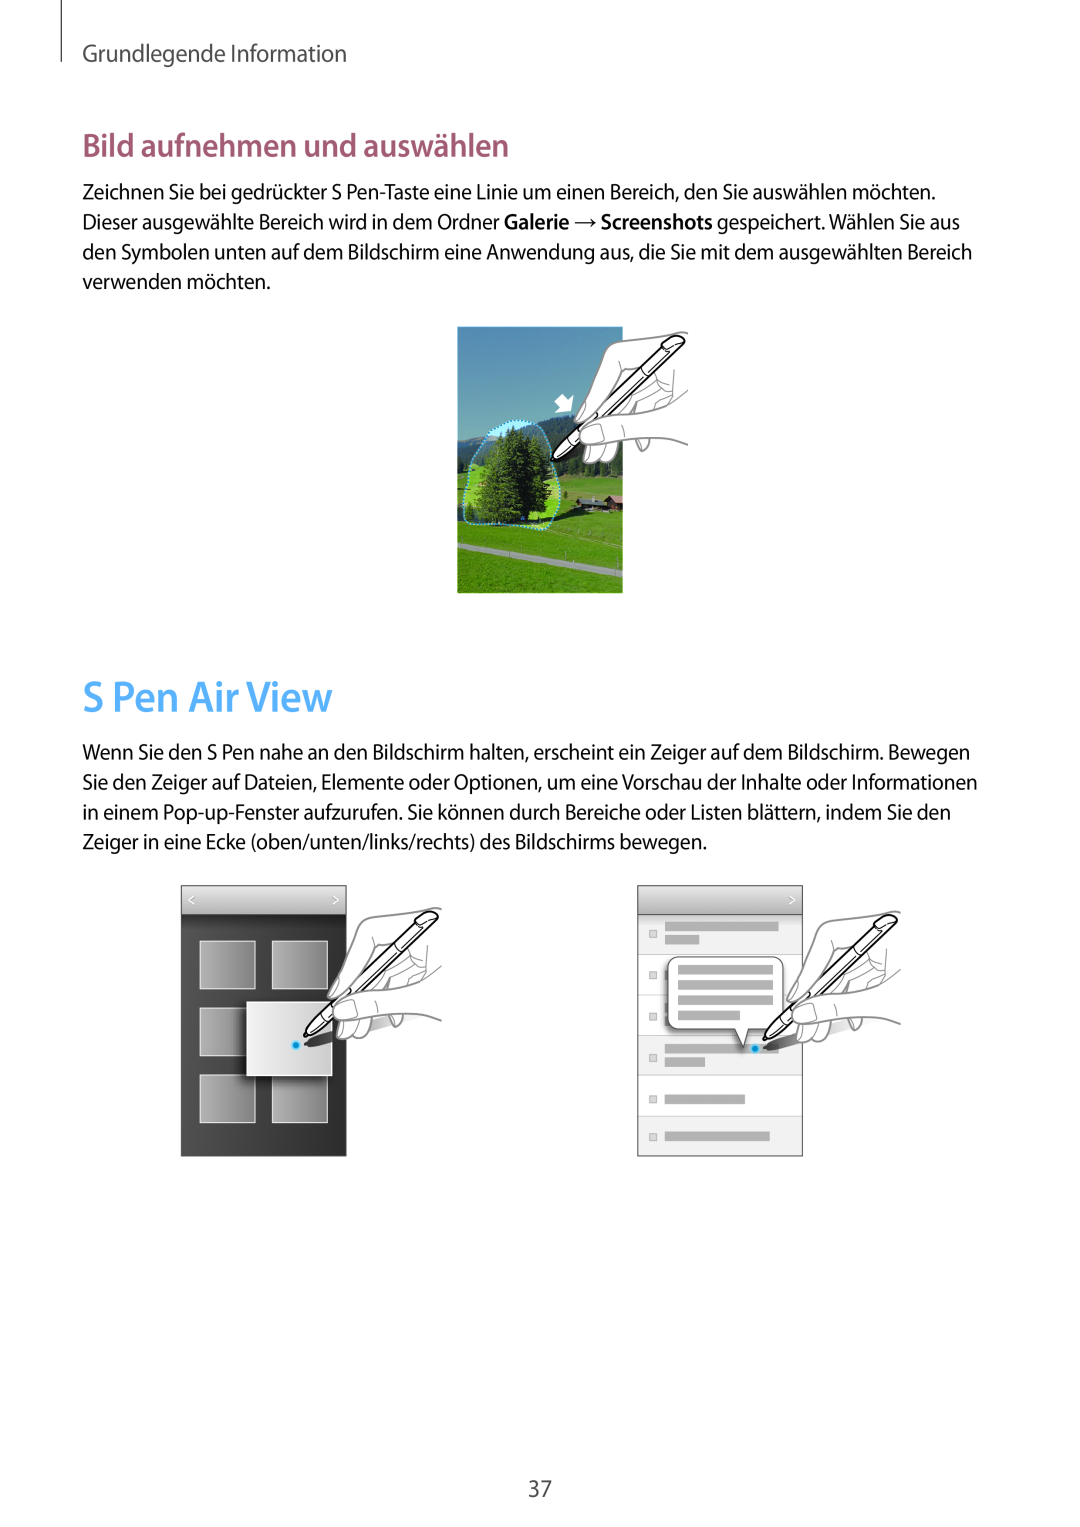 Samsung GT-N7100ZNDTUR, GT-N7100ZBDTUR manual S Pen Air View, Bild aufnehmen und auswählen, Grundlegende Information 